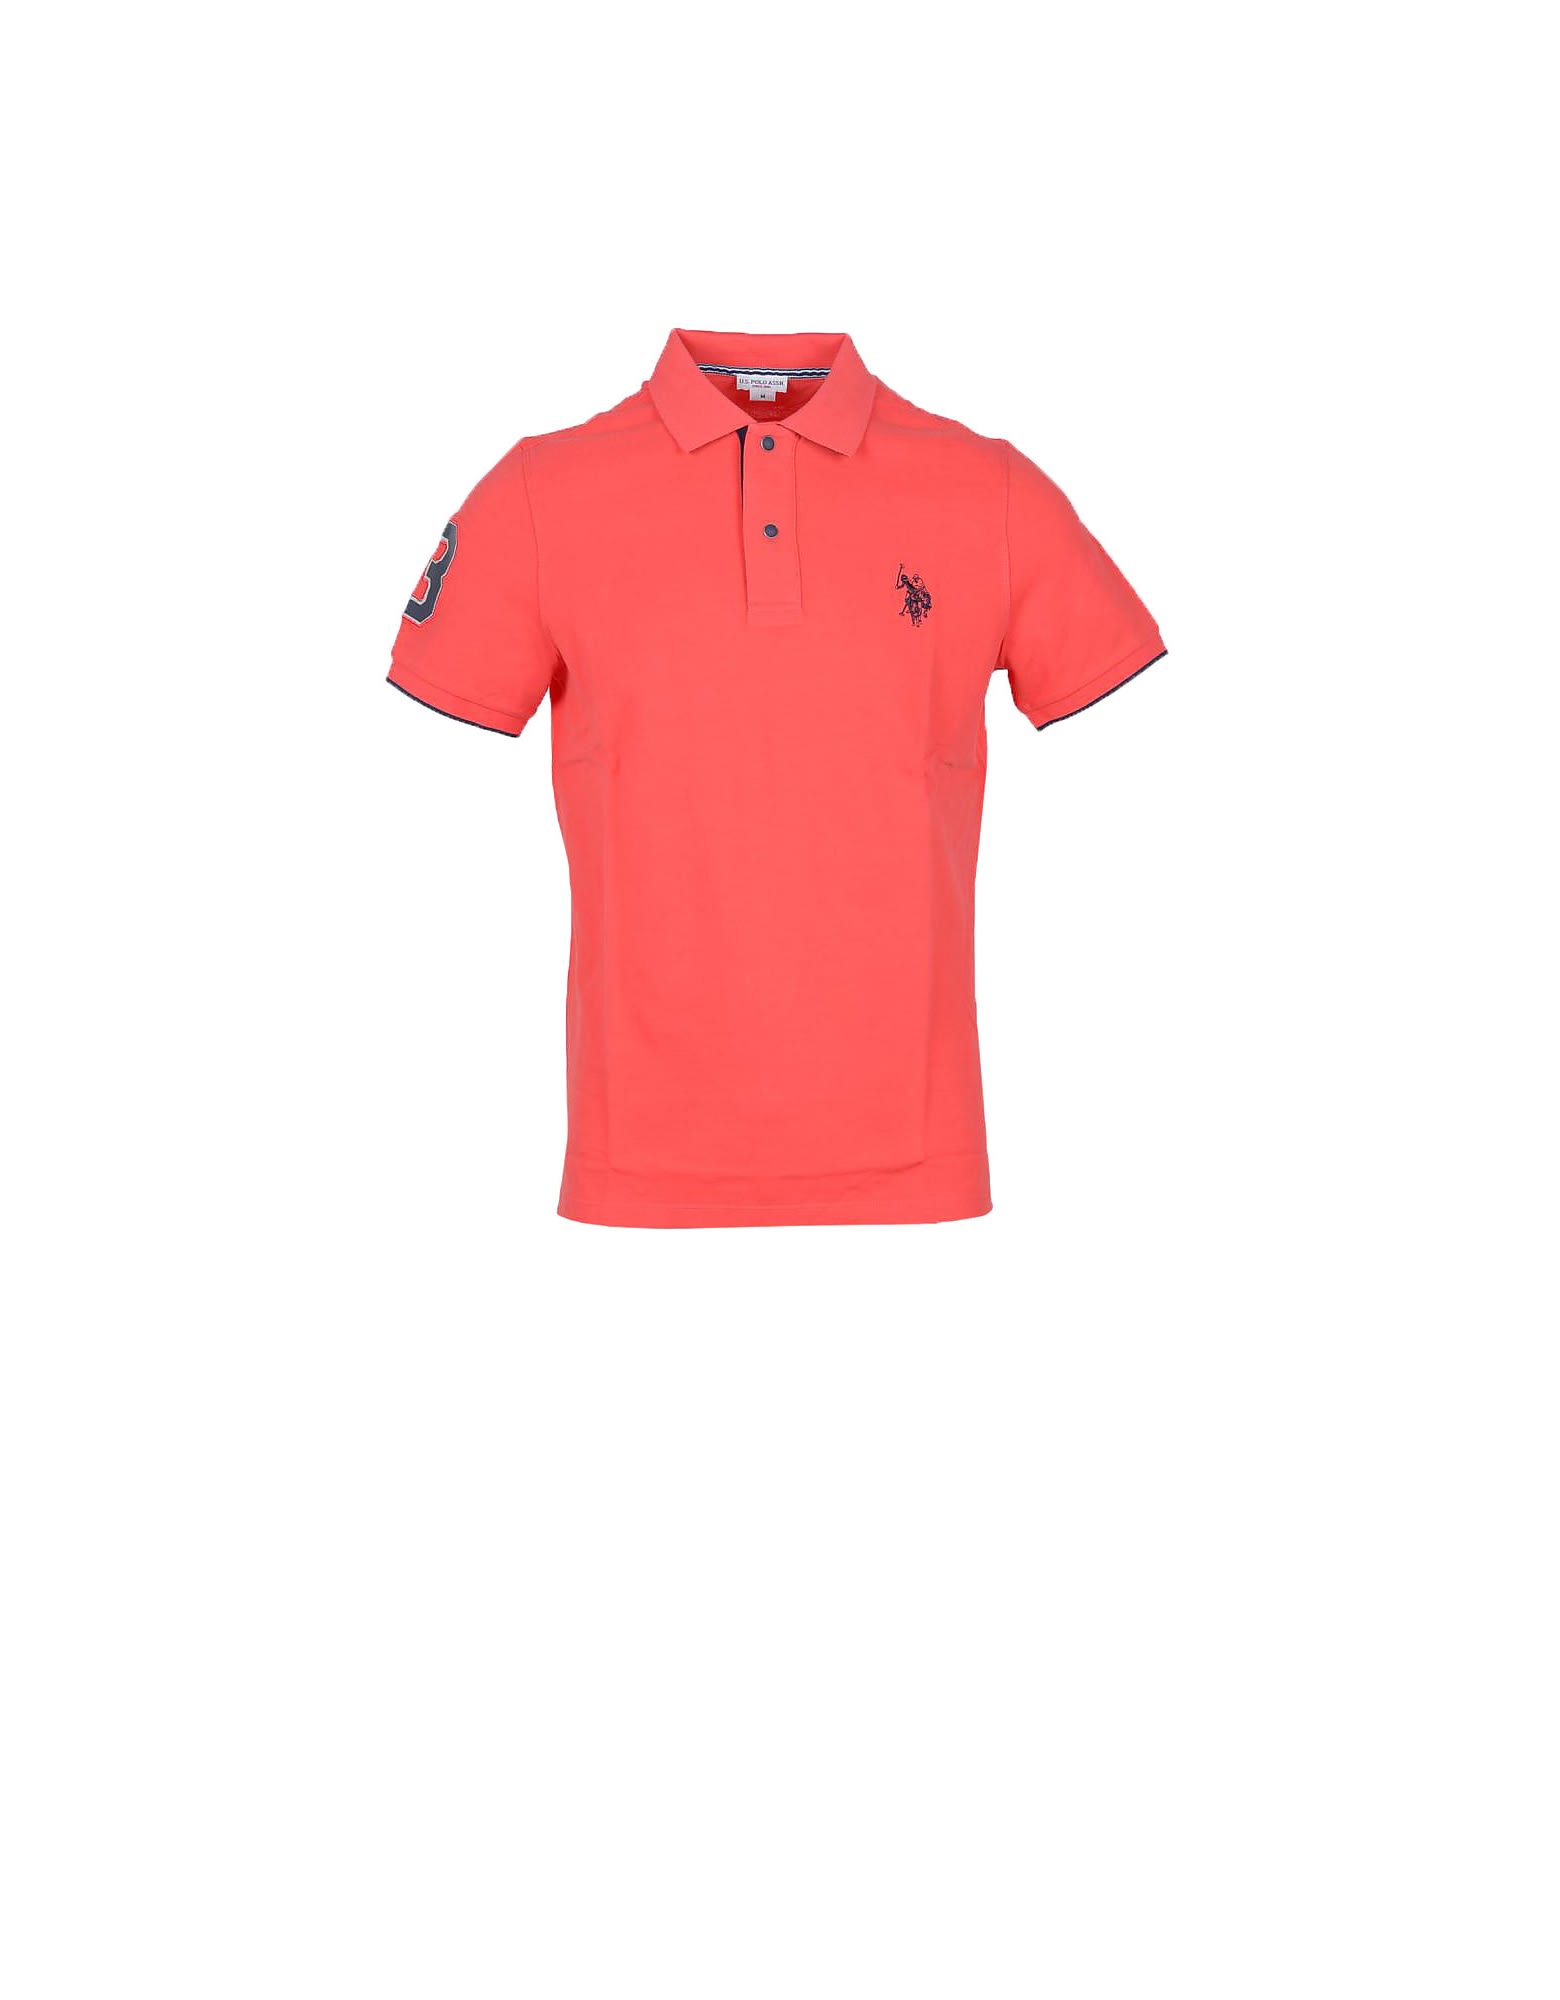 U.s. Polo Assn. Bright Orange Cotton Mens Polo Shirt